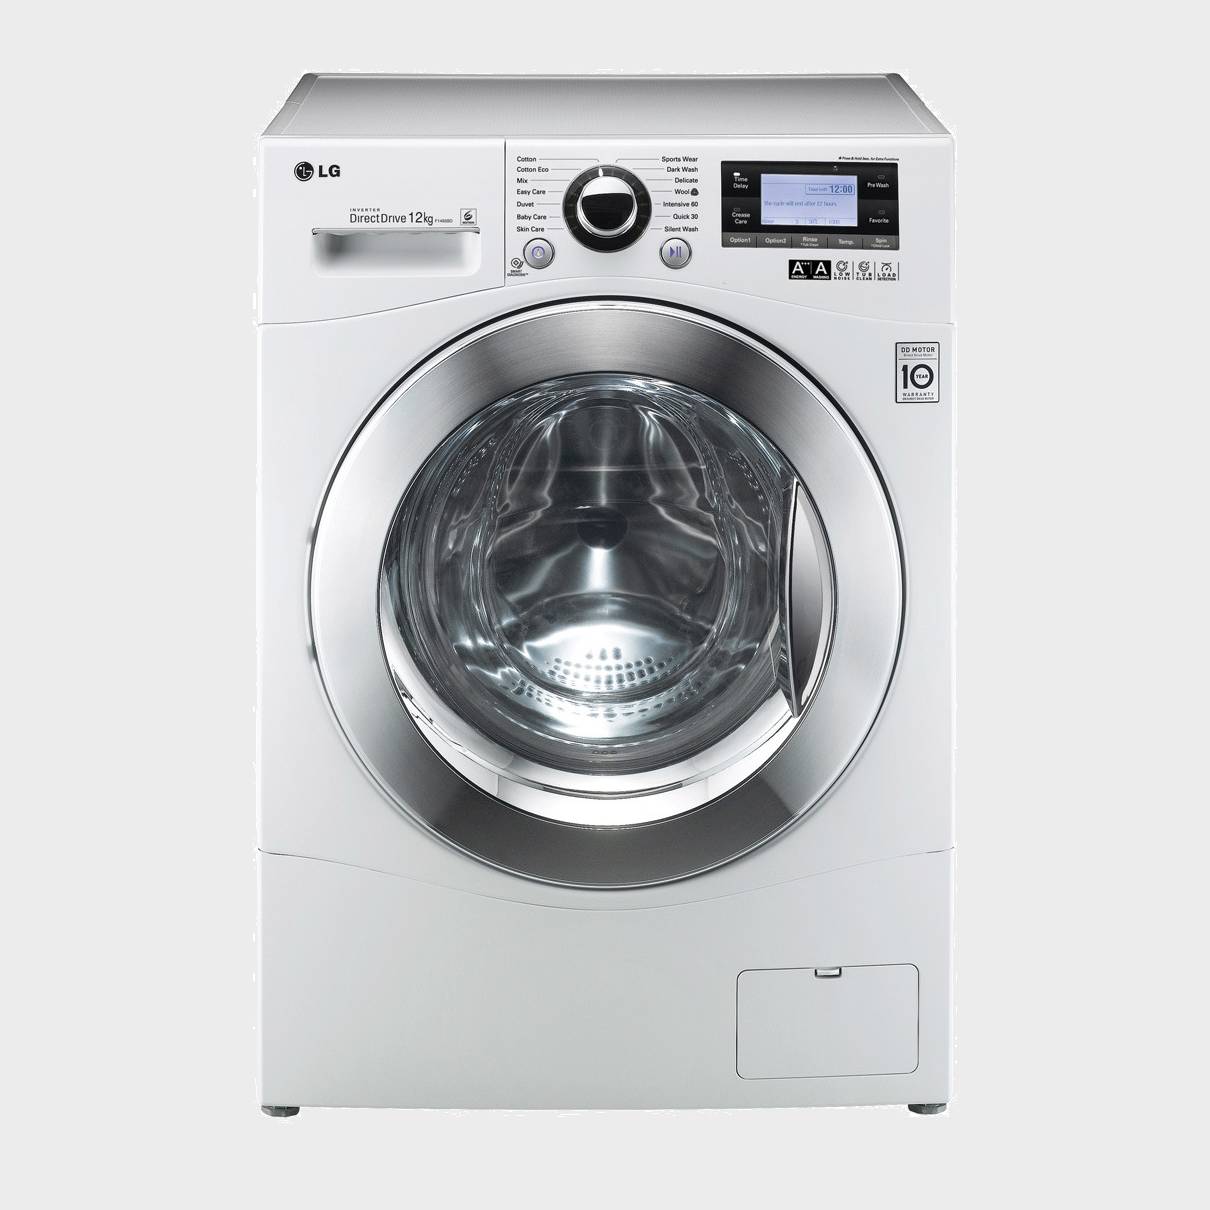 LG FH495BDN2 lavadora de 12kg 1400 rpm